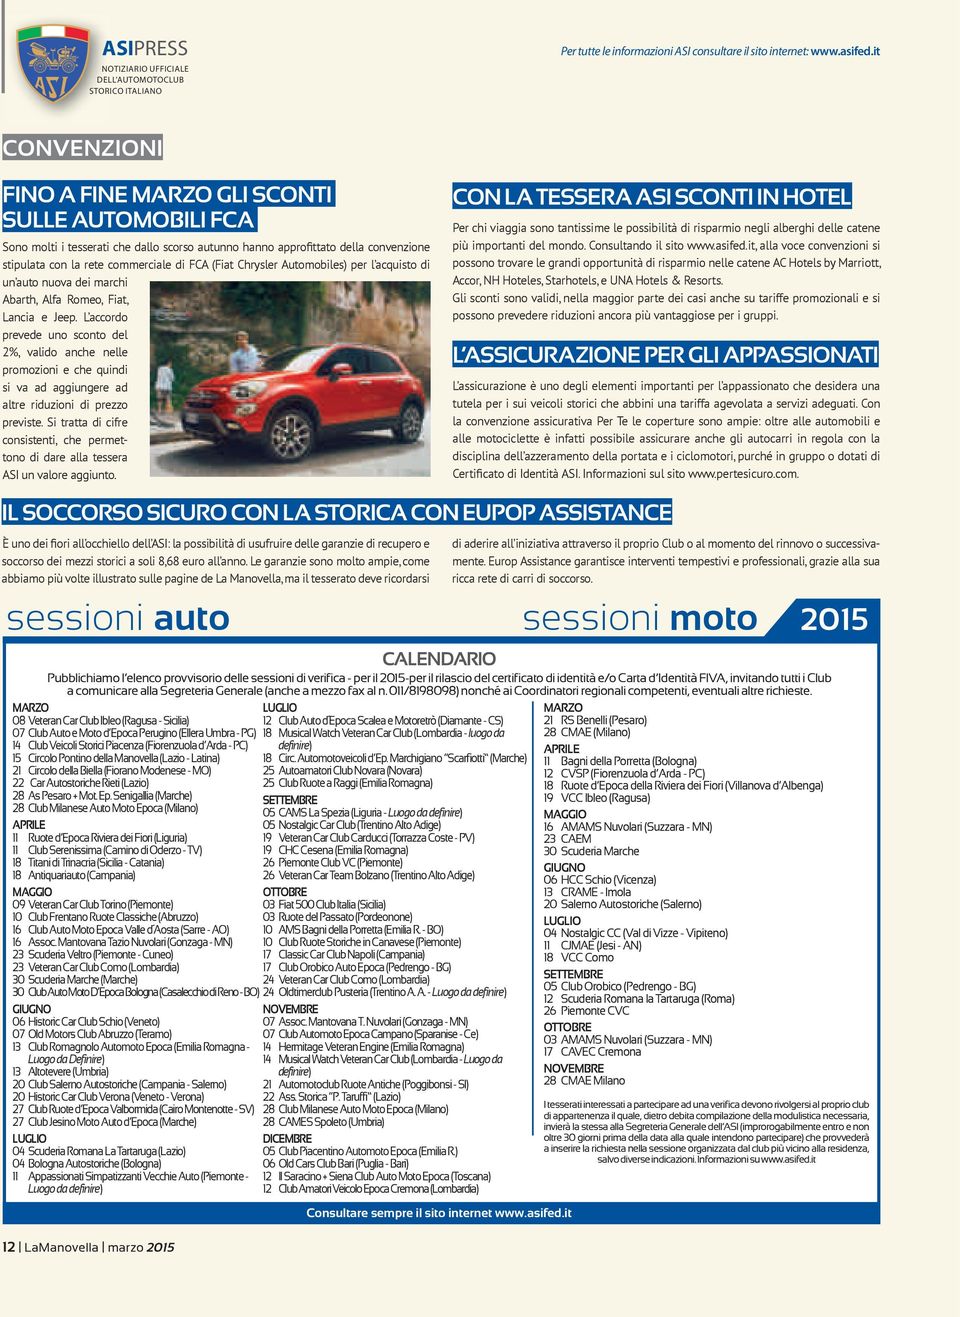 Chrysler Automobiles) per l acquisto di un auto nuova dei marchi Abarth, Alfa Romeo, Fiat, Lancia e Jeep.